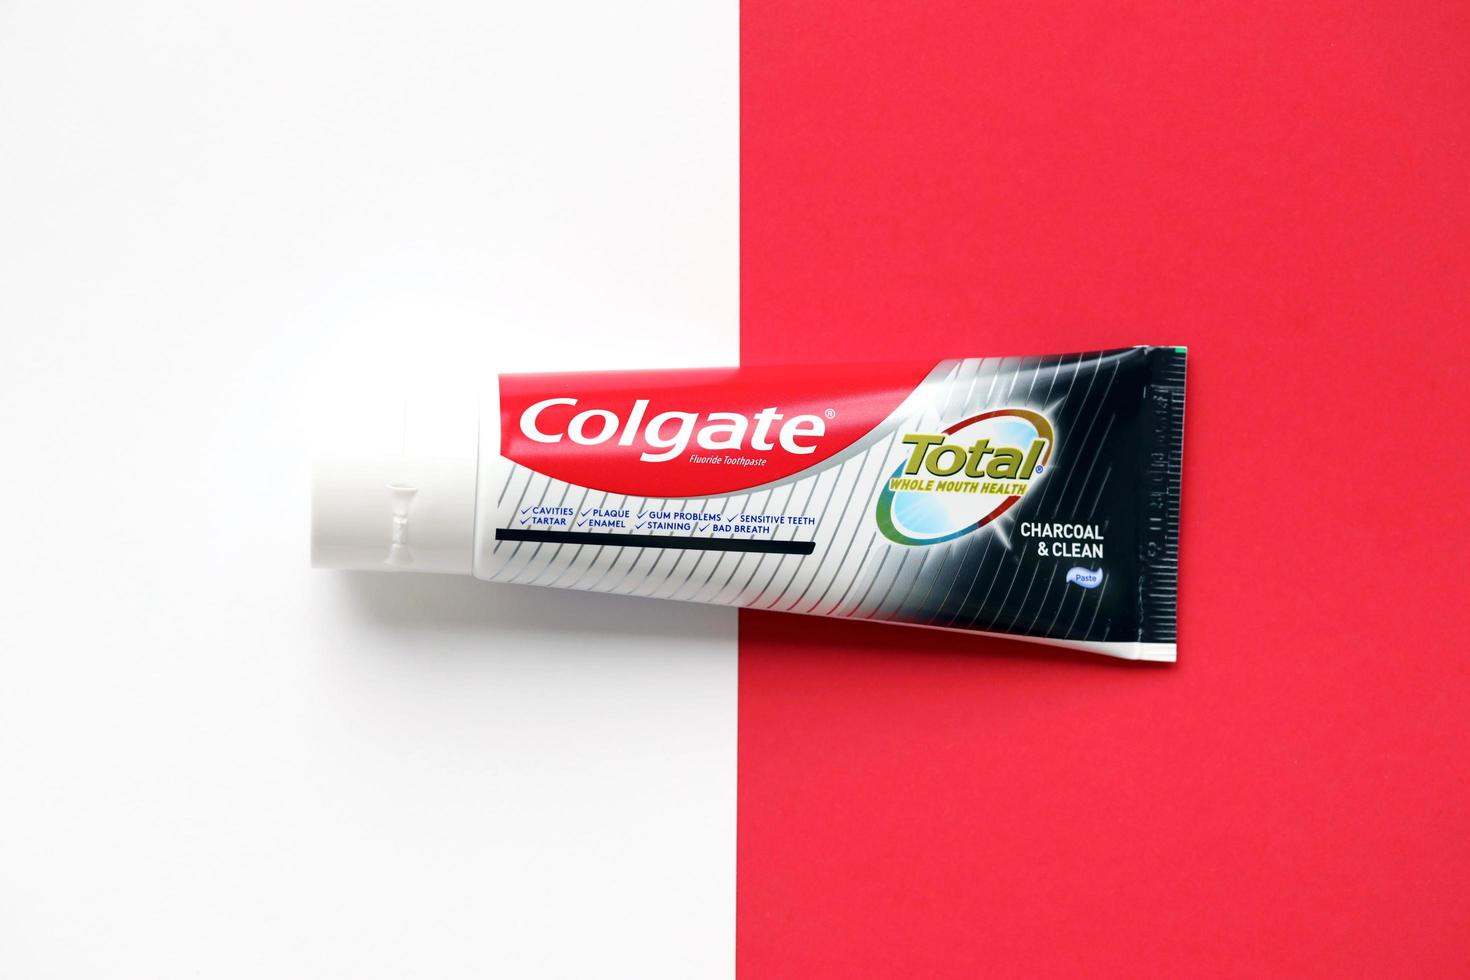 ternopil, ukraine - 23 juin 2022 dentifrice colgate, une marque de produits d'hygiène buccale fabriqués par la société américaine de biens de consommation colgate-palmolive photo